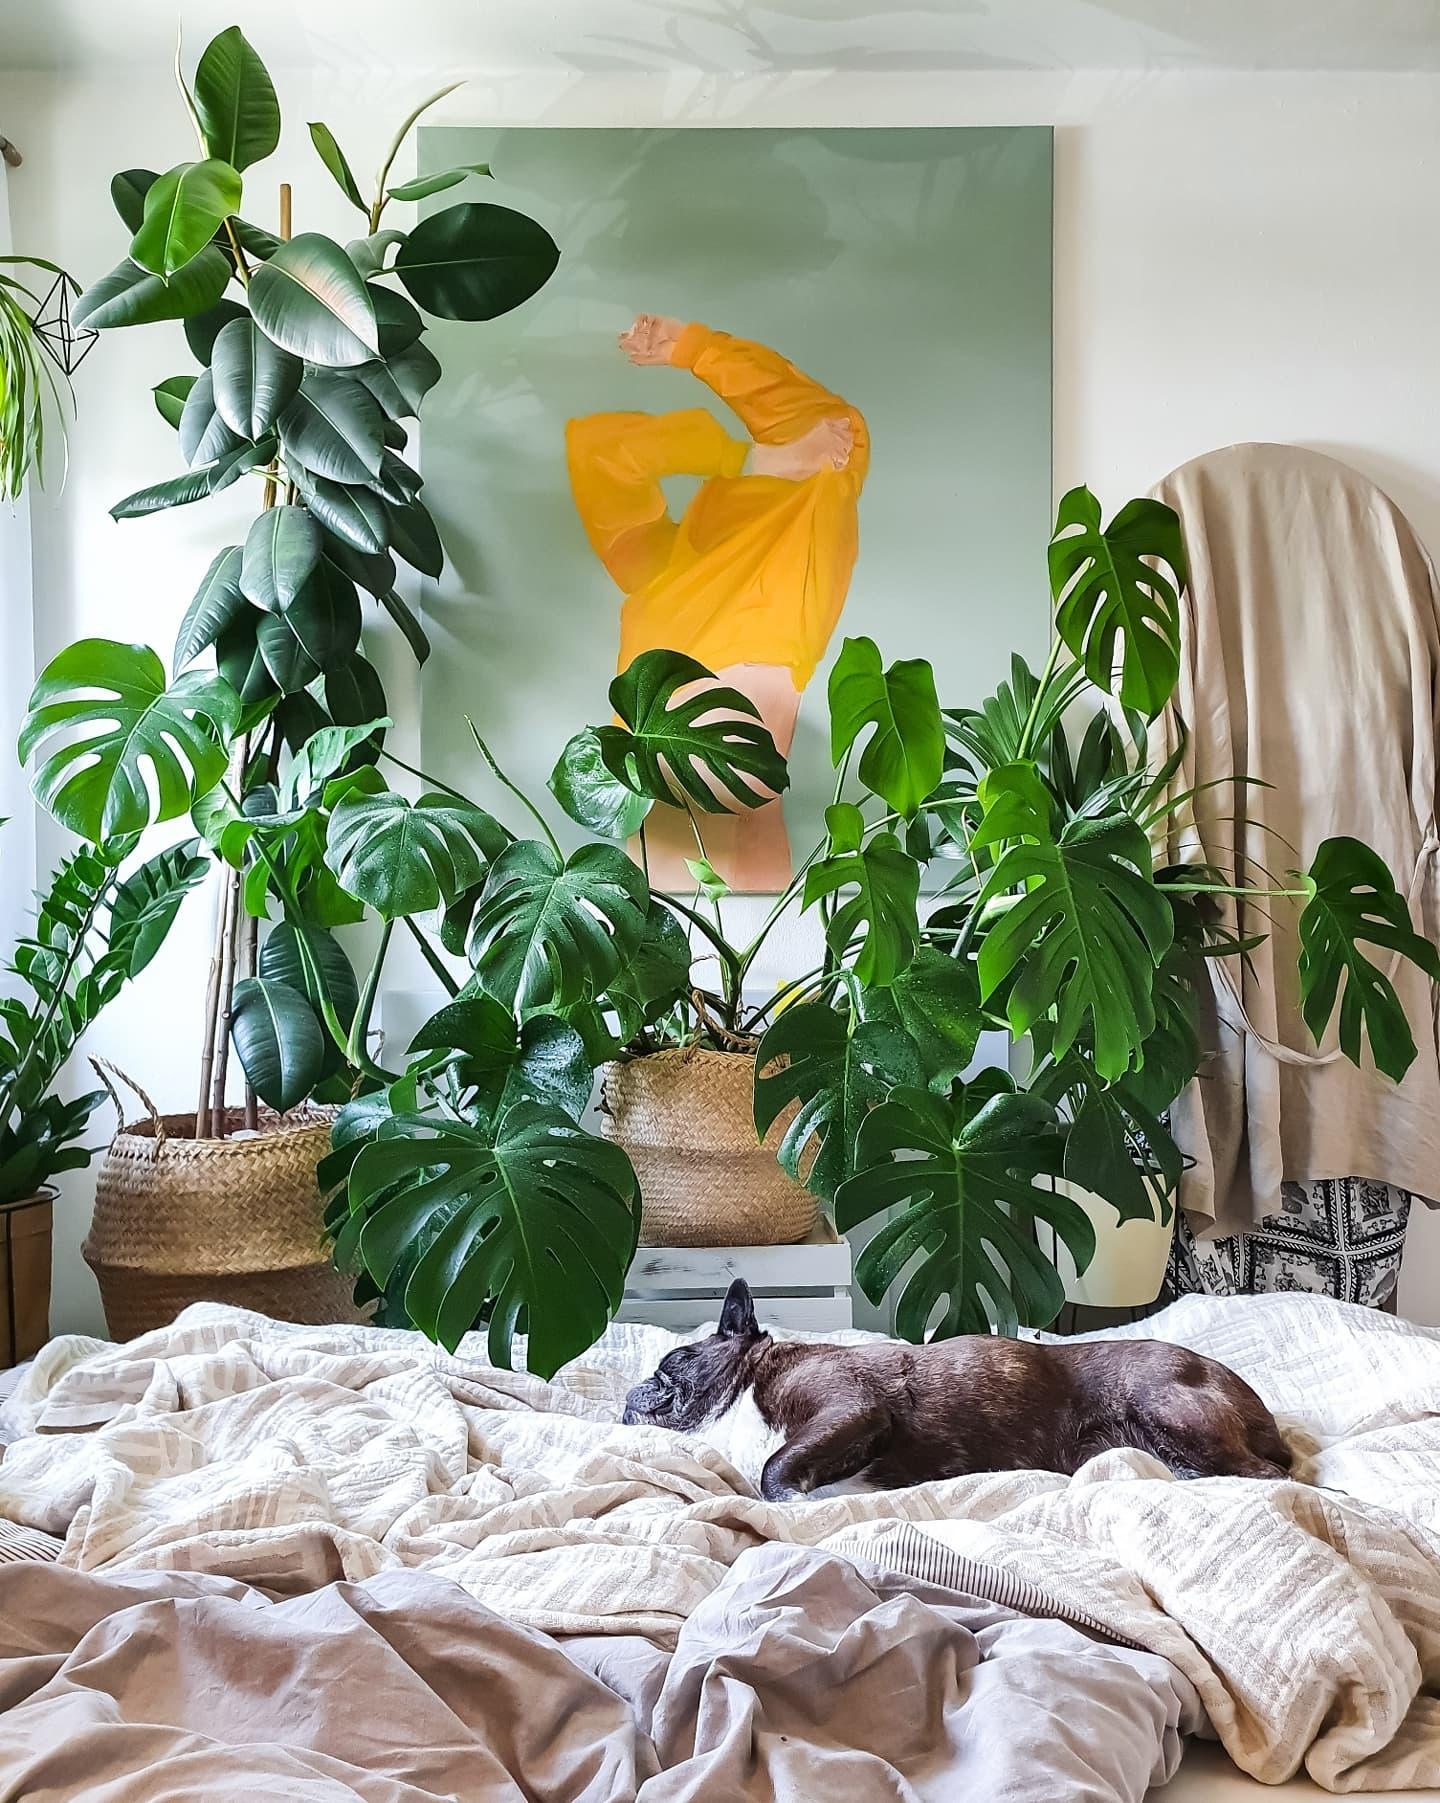 Schönes Wochenende 🪴 #Schlafzimmer #Pflanzen #Bettwäsche #hygge #Monstera #gummibaum